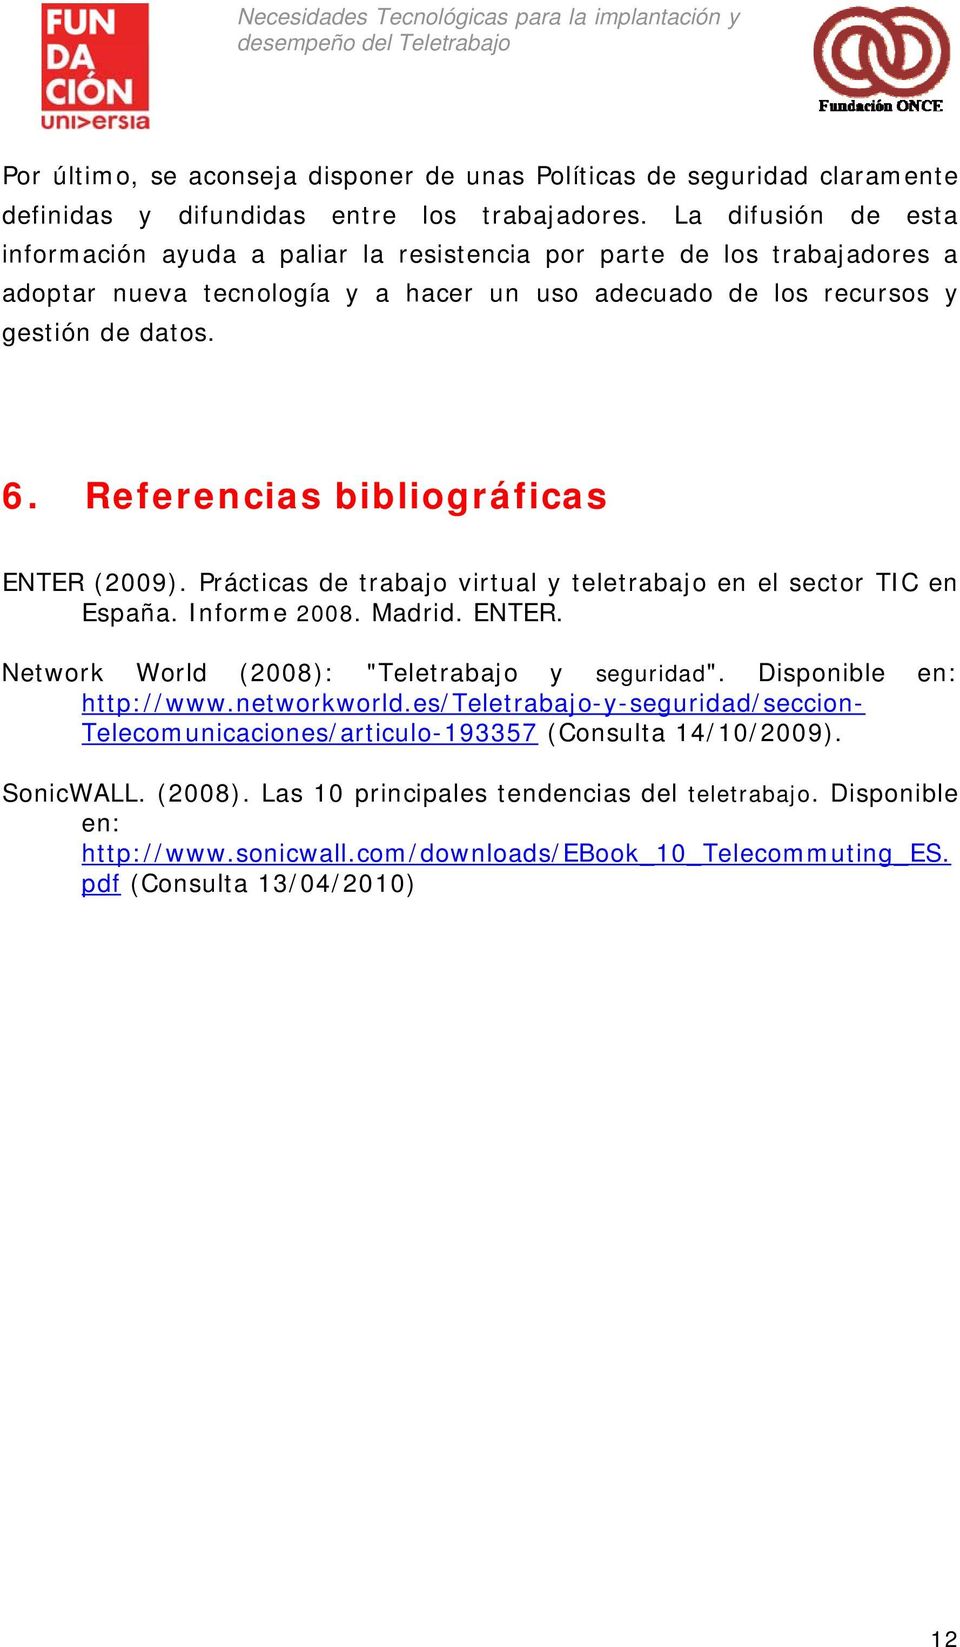 Referencias bibliográficas ENTER (2009). Prácticas de trabajo virtual y teletrabajo en el sector TIC en España. Informe 2008. Madrid. ENTER. Network World (2008): "Teletrabajo y seguridad".